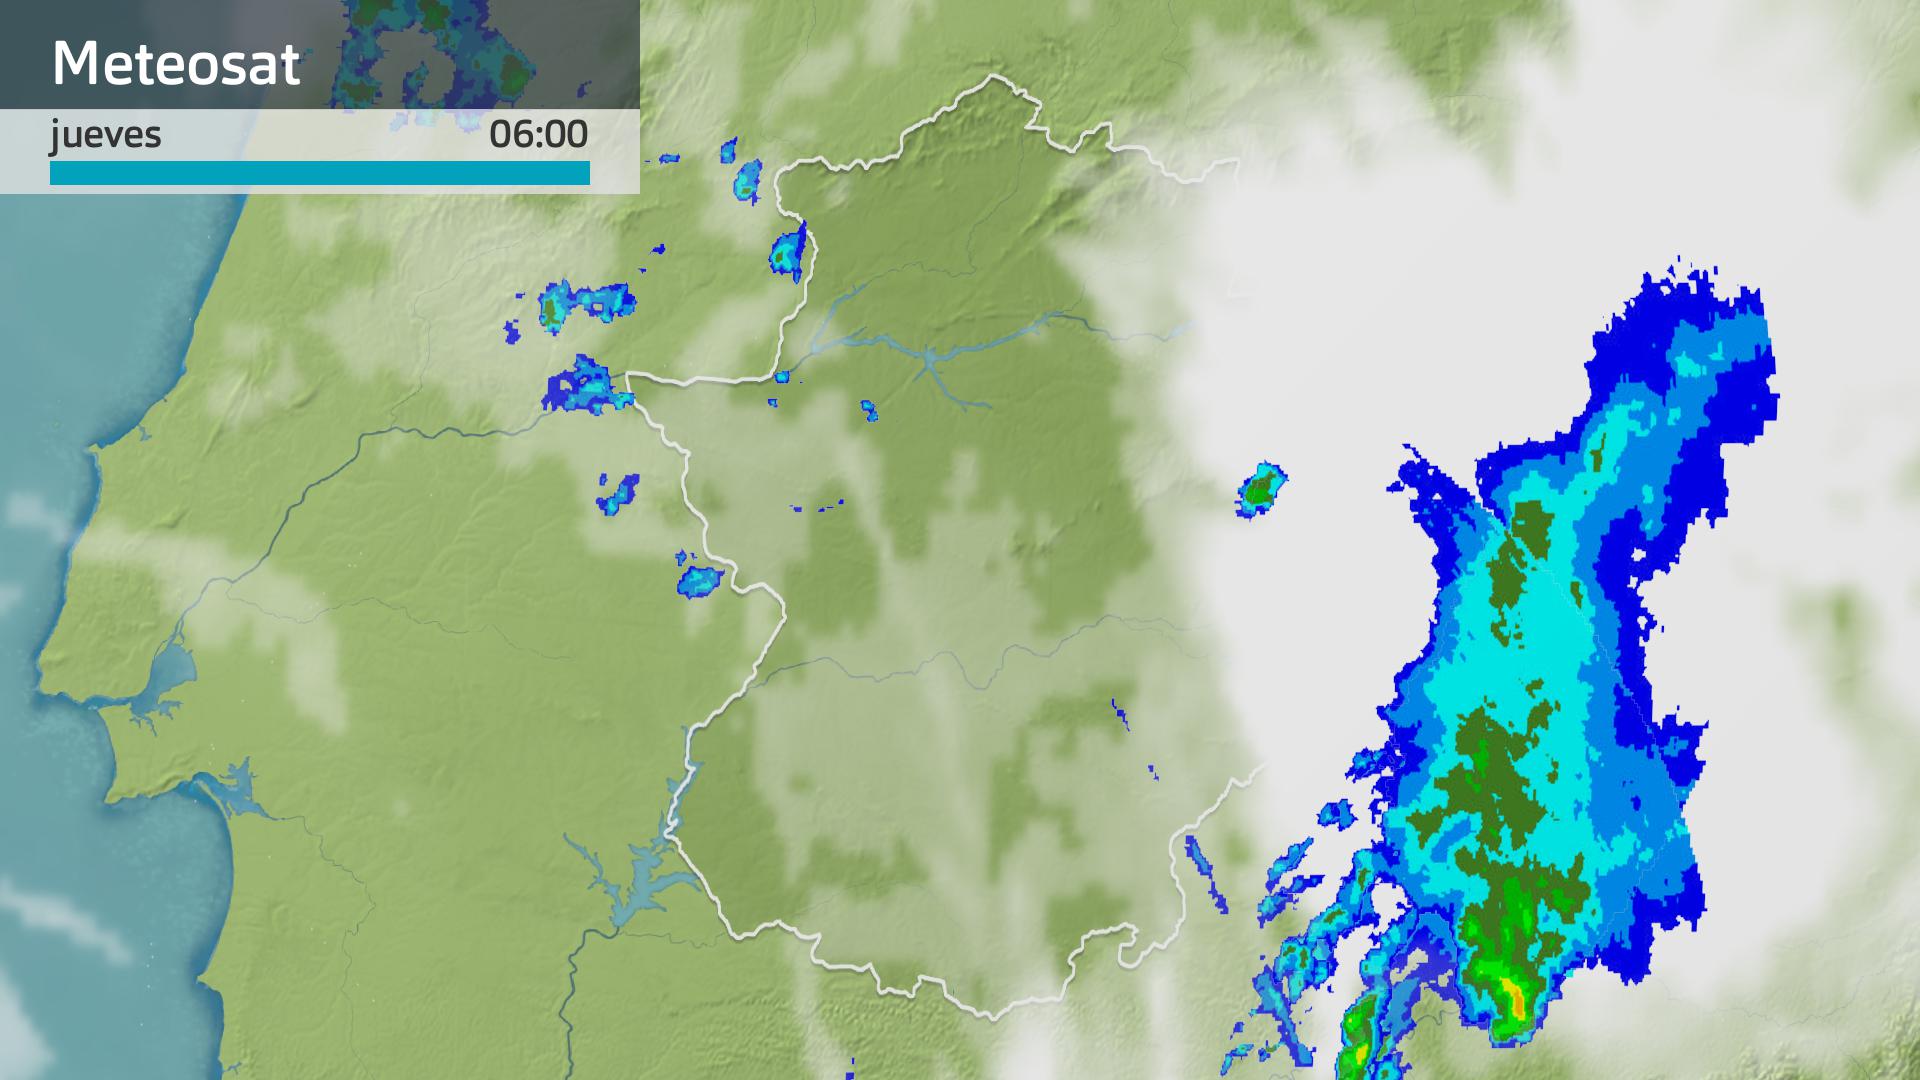 Imagen del Meteosat + radar meteorológico jueves 27 de junio 6 h.